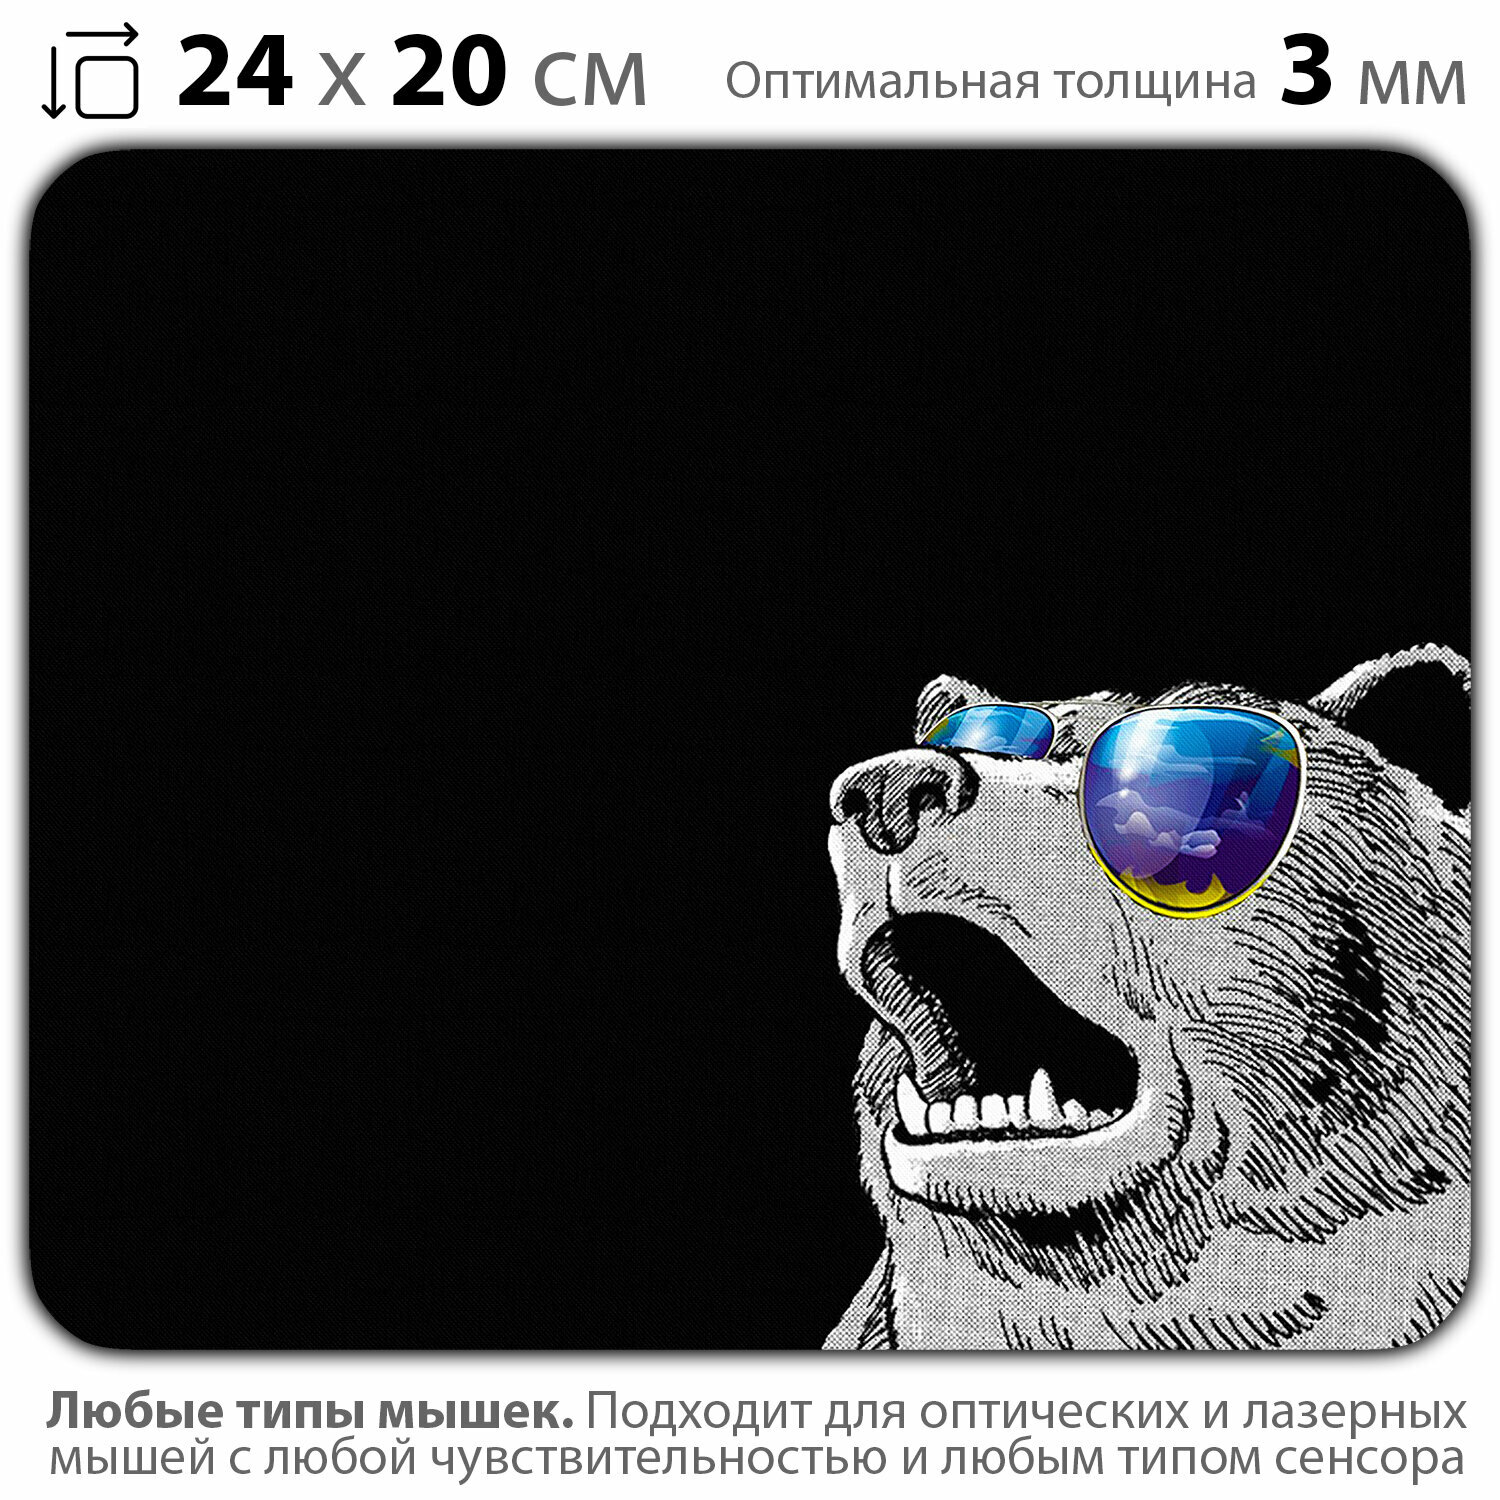 Коврик для мыши "Удивленный медведь в очках" (24 x 20 см x 3 мм)